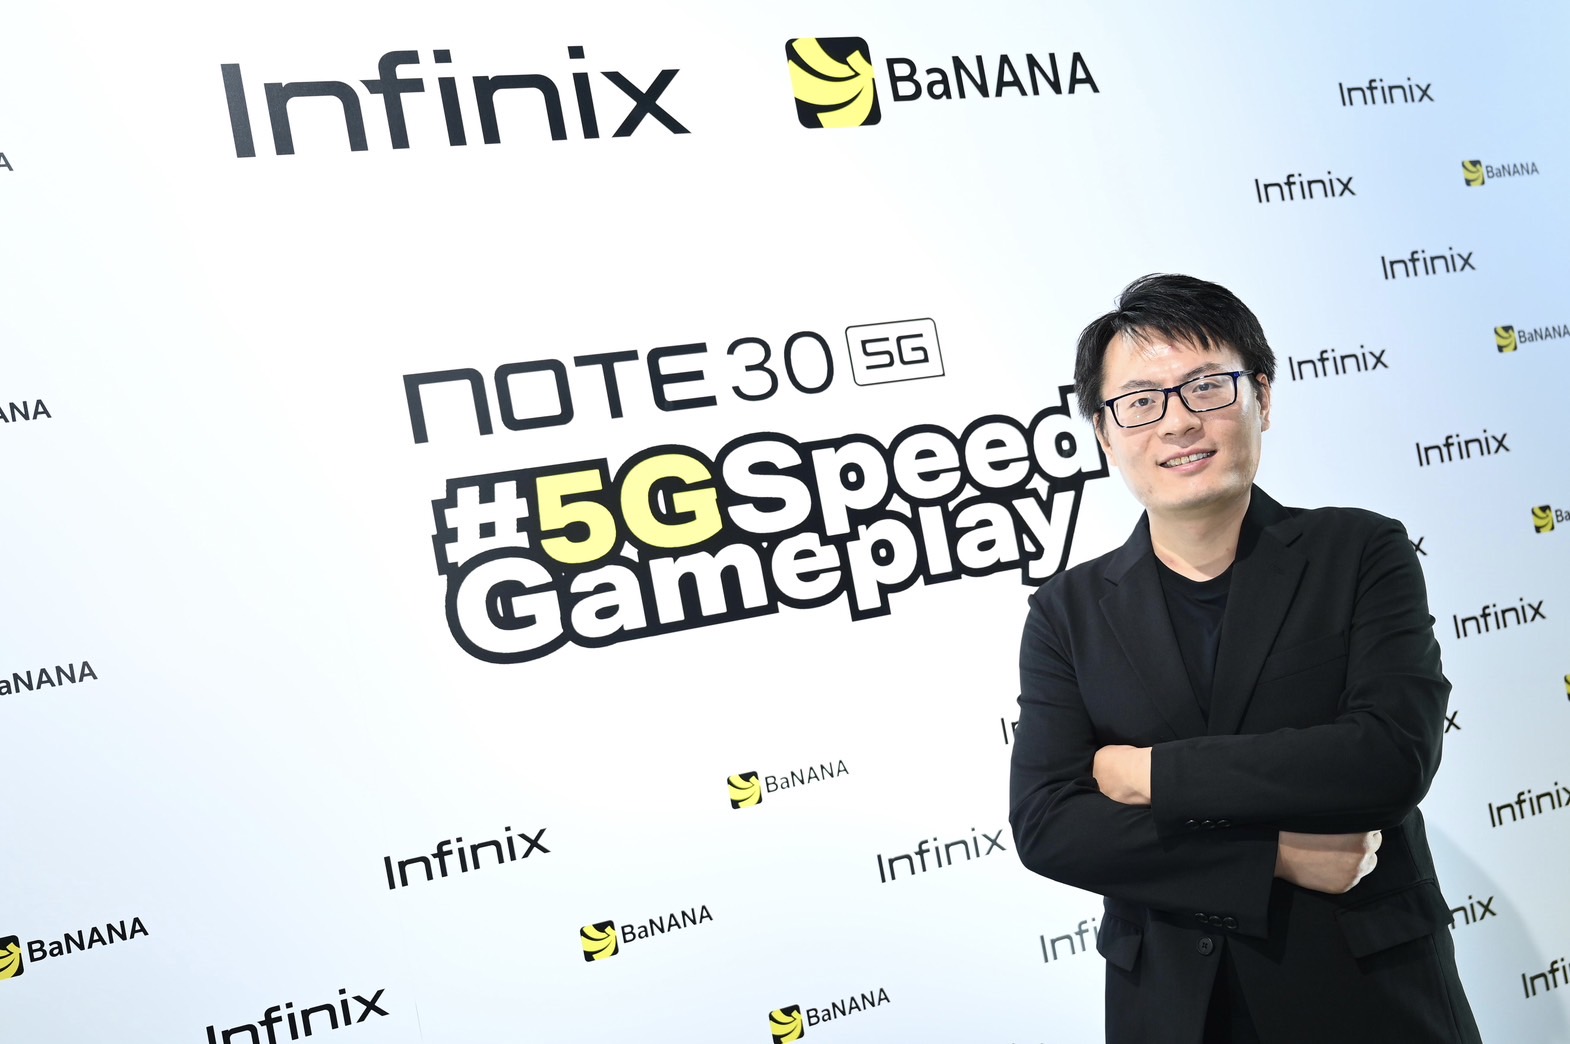 Infinix x BaNANA 5G Speed Gameplay